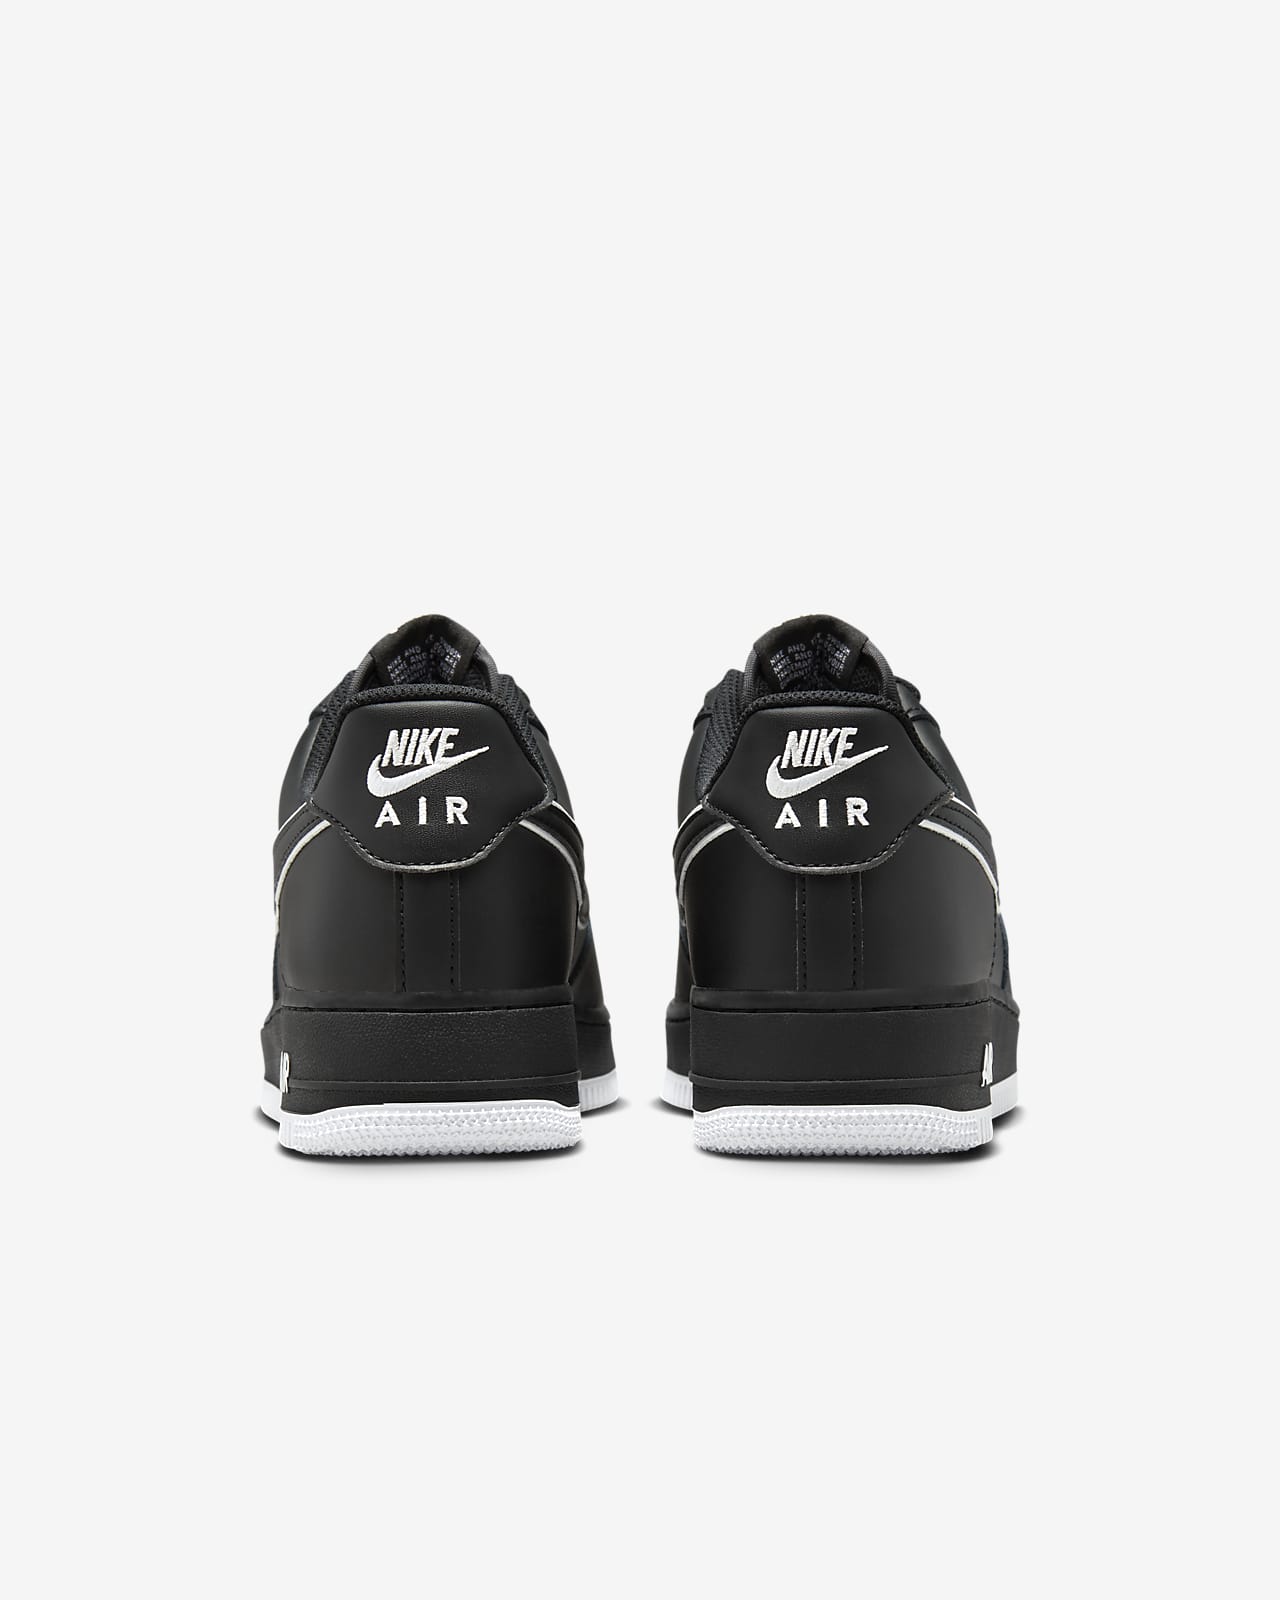 Nike Chaussures Air Force 1 '07 - Blanc/Noir